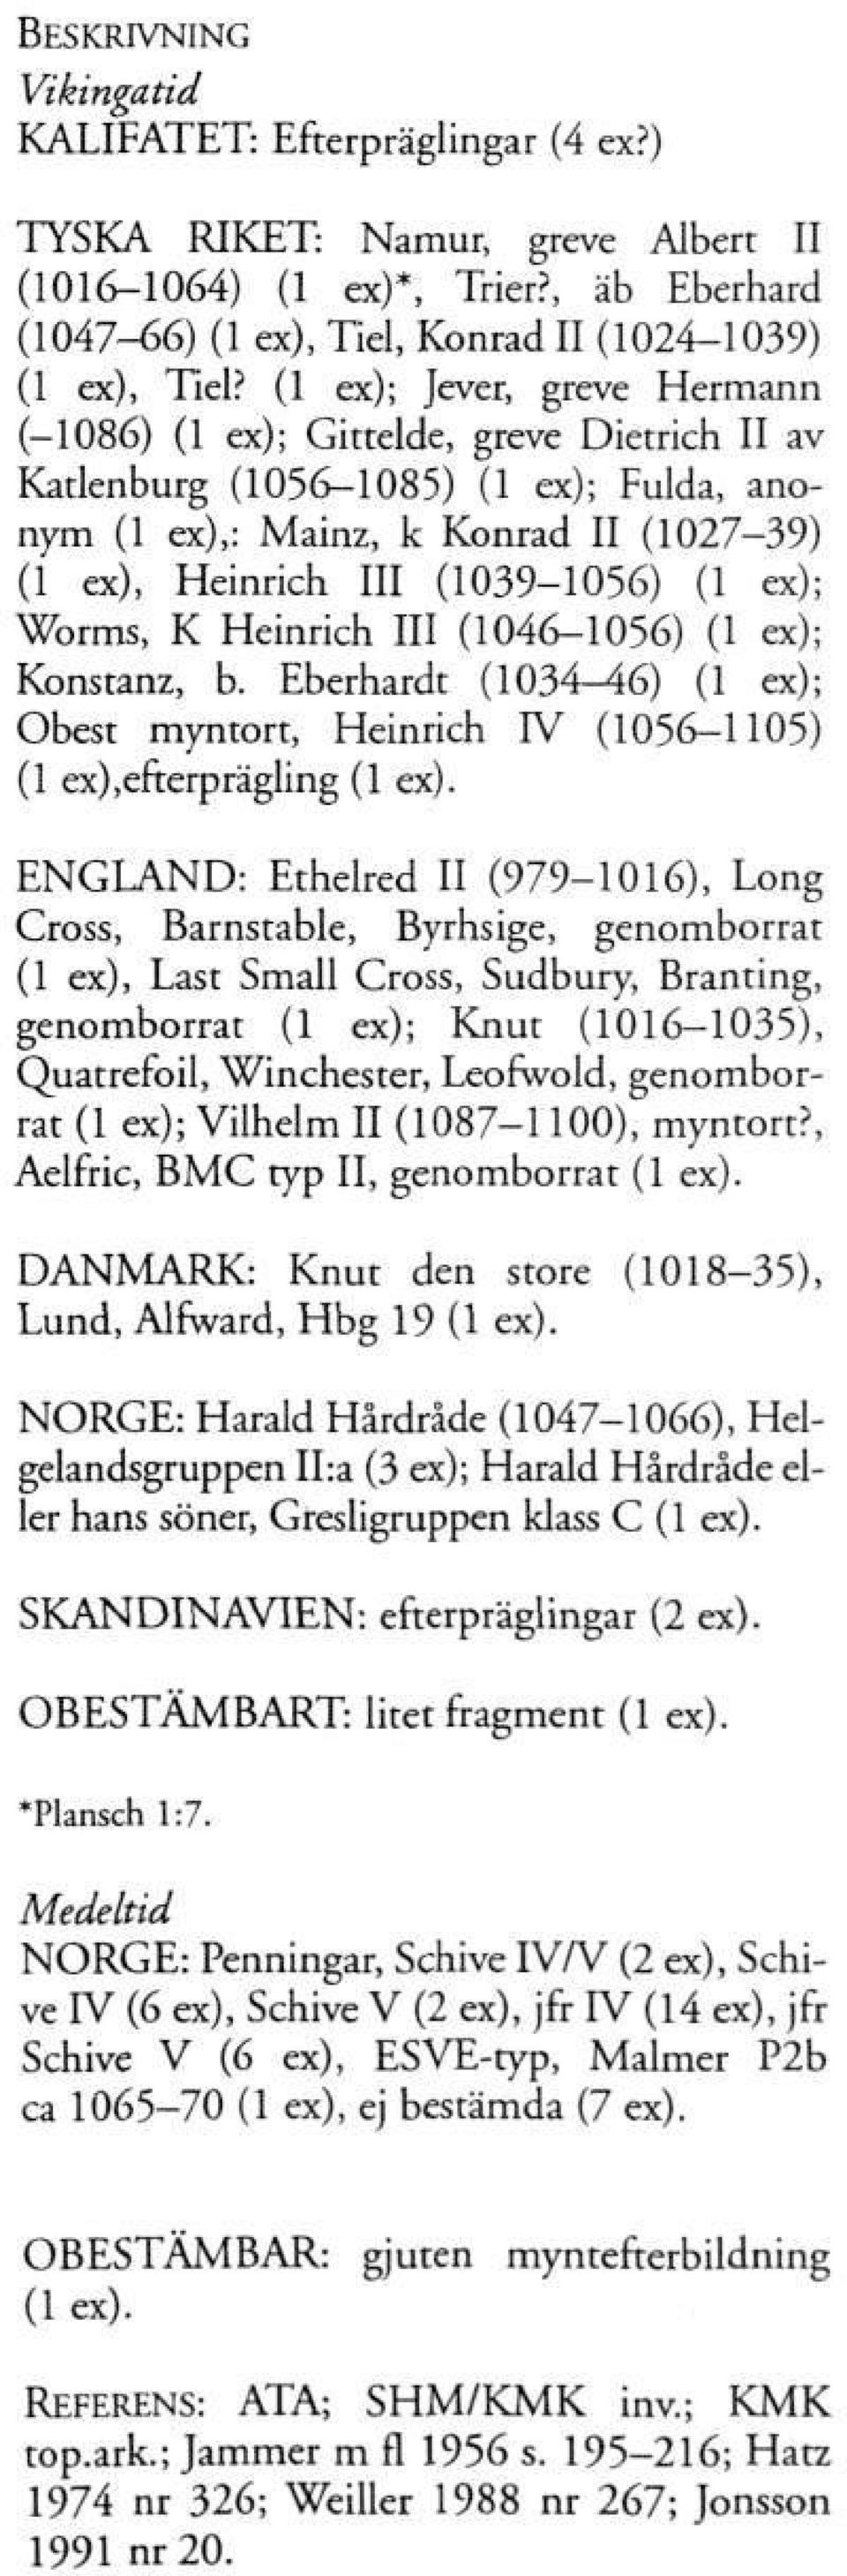 Worms, K Heinrich III (1046-1056) (1 ex); Konstanz, b. Eberhardt (1034-46) (1 ex); Obest myntort, Heinrich IV (1056-1105) (1 ex),efterprägling (1 ex).